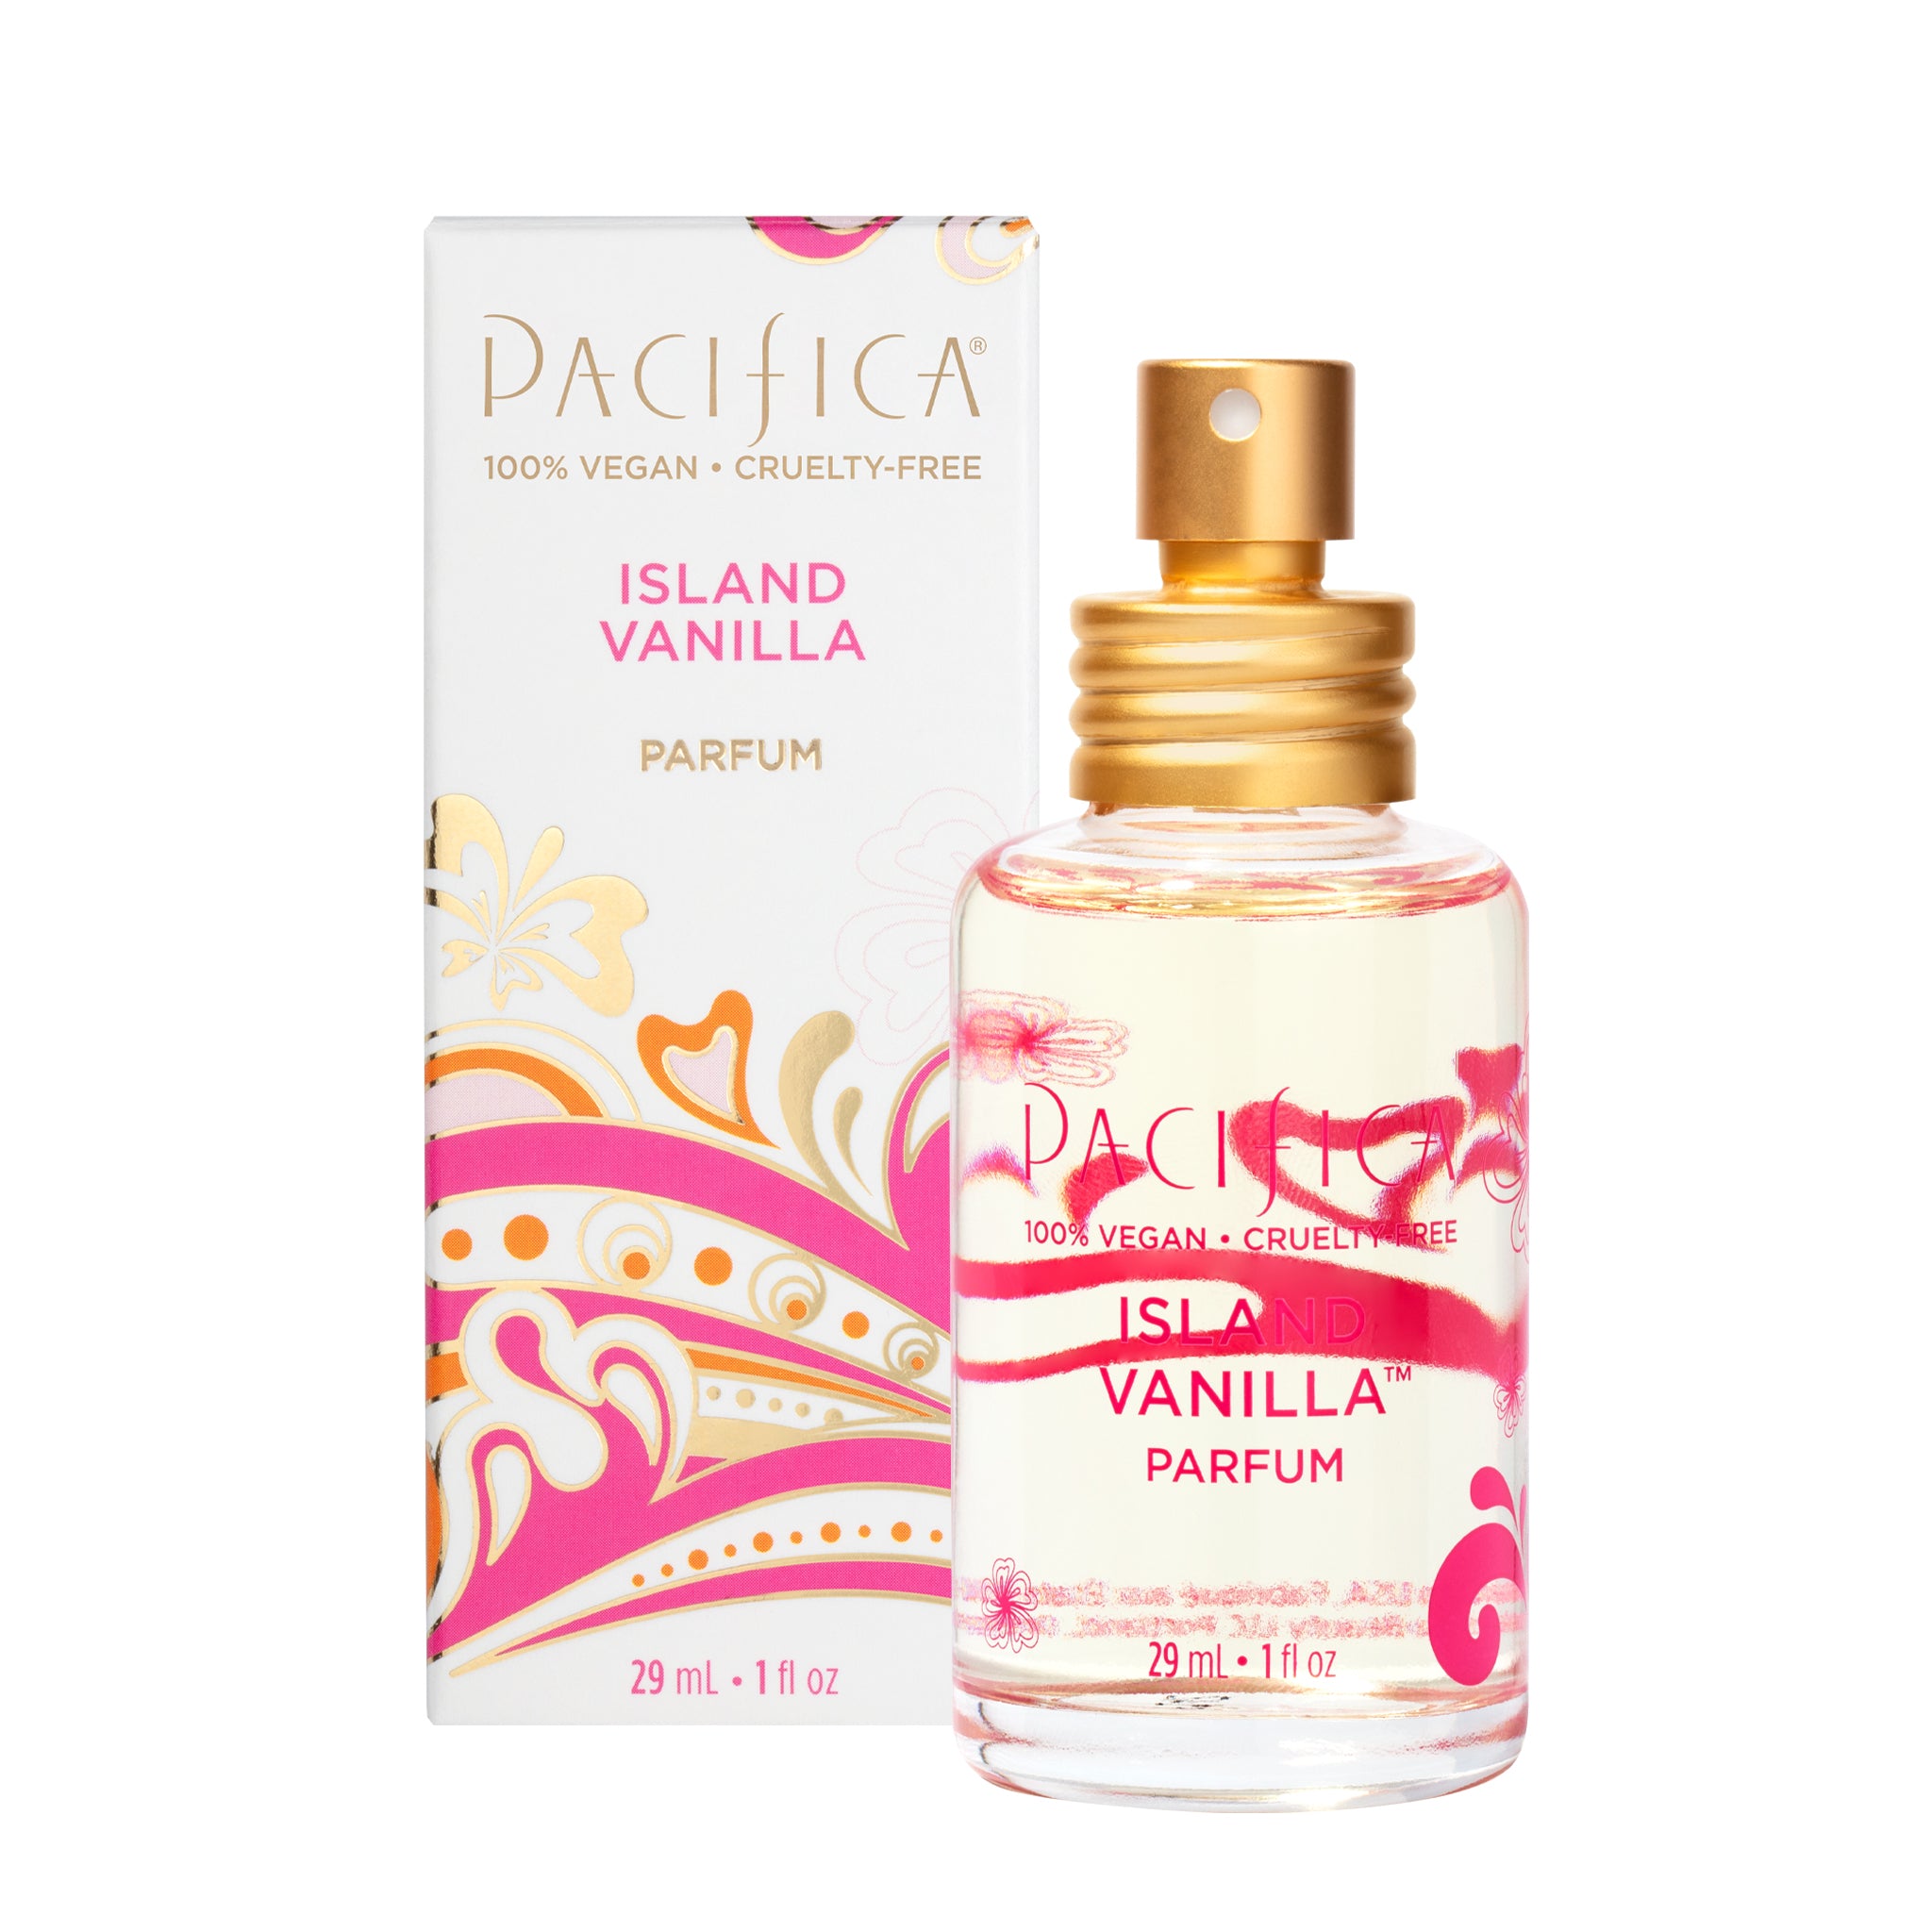 Pacifica Island Vanilla Perfume 1 fl oz